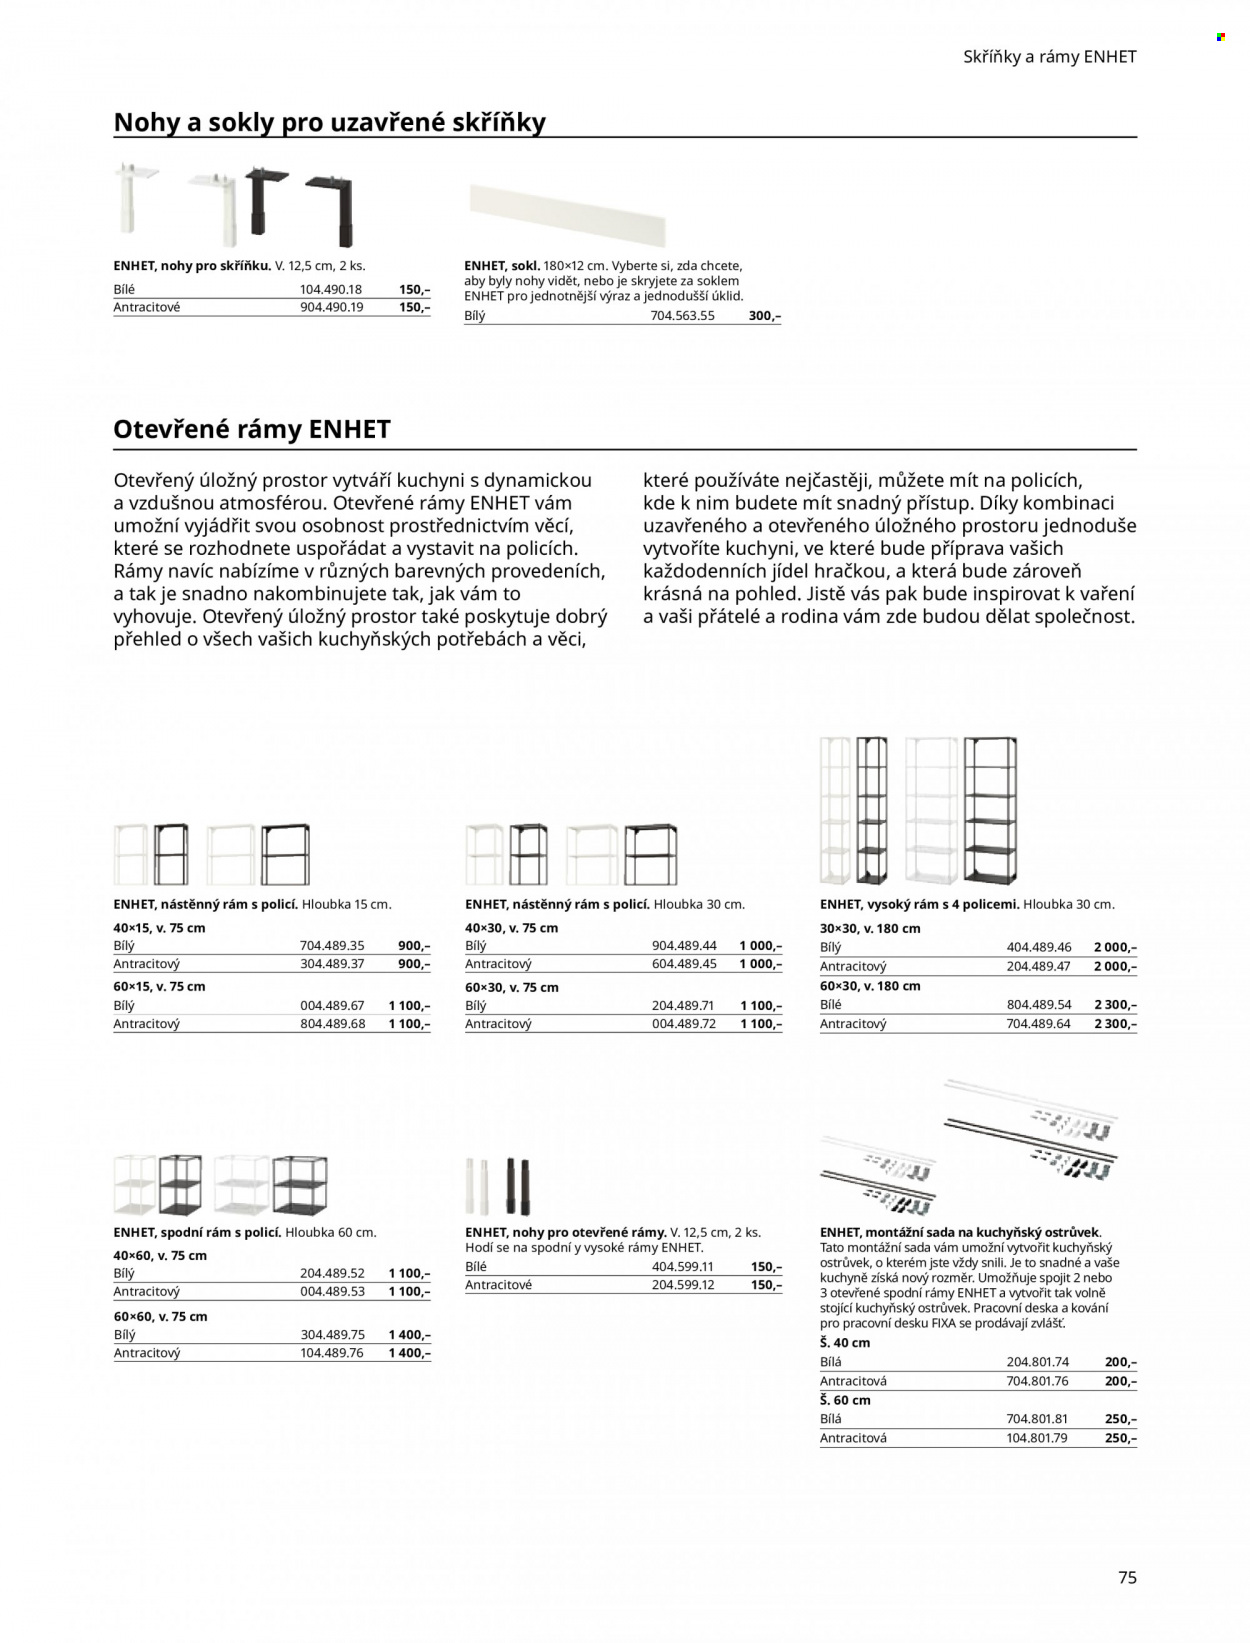 Leták IKEA - Produkty v akci - fixy, pohled, deska, pracovní deska, police. Strana 75.